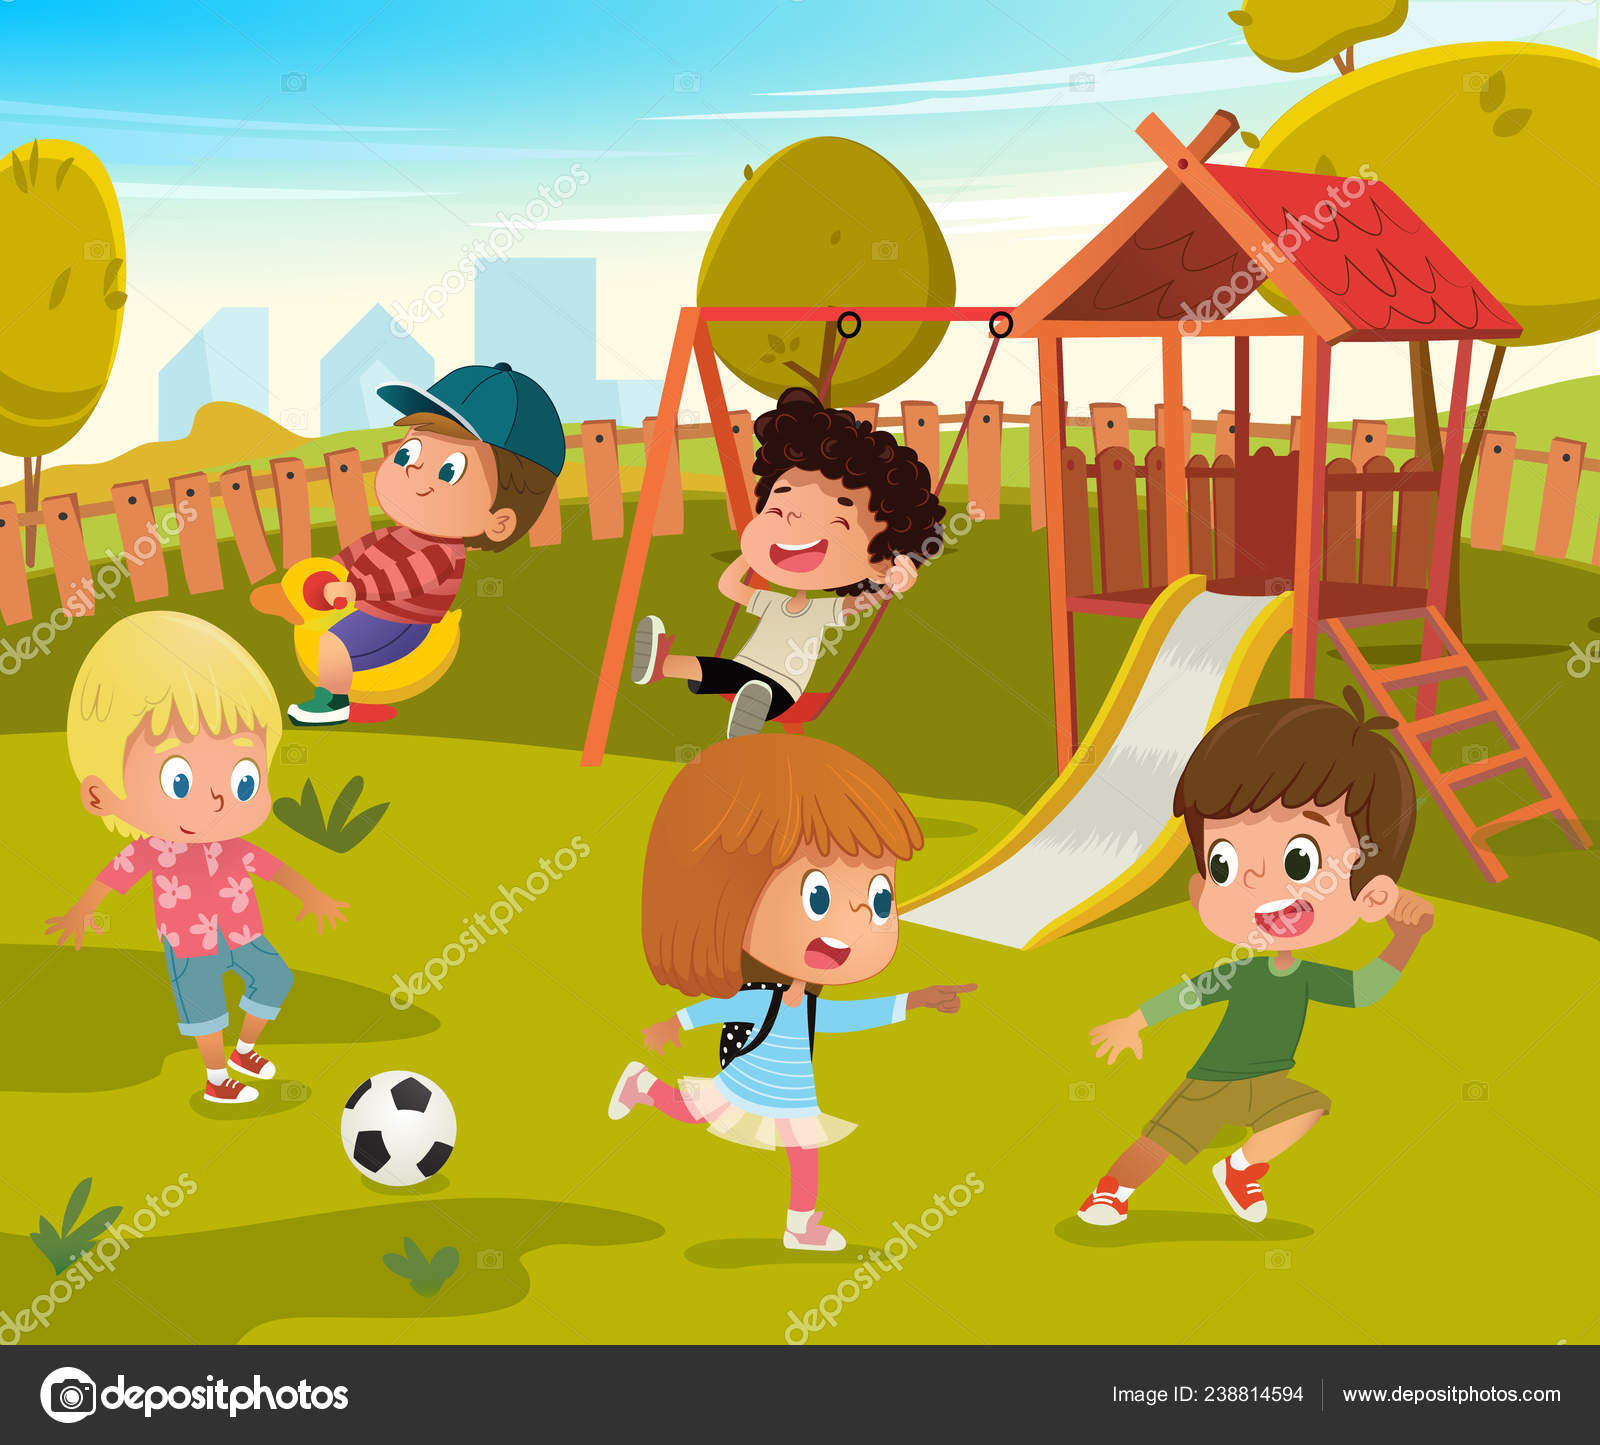 Banners dos desenhos animados crianças meninos e meninas personagens jogar  jogo de amarelinha no quintal de casa crianças felizes atividade de férias  de verão amigos passam tempo juntos no parque infantil ilustração